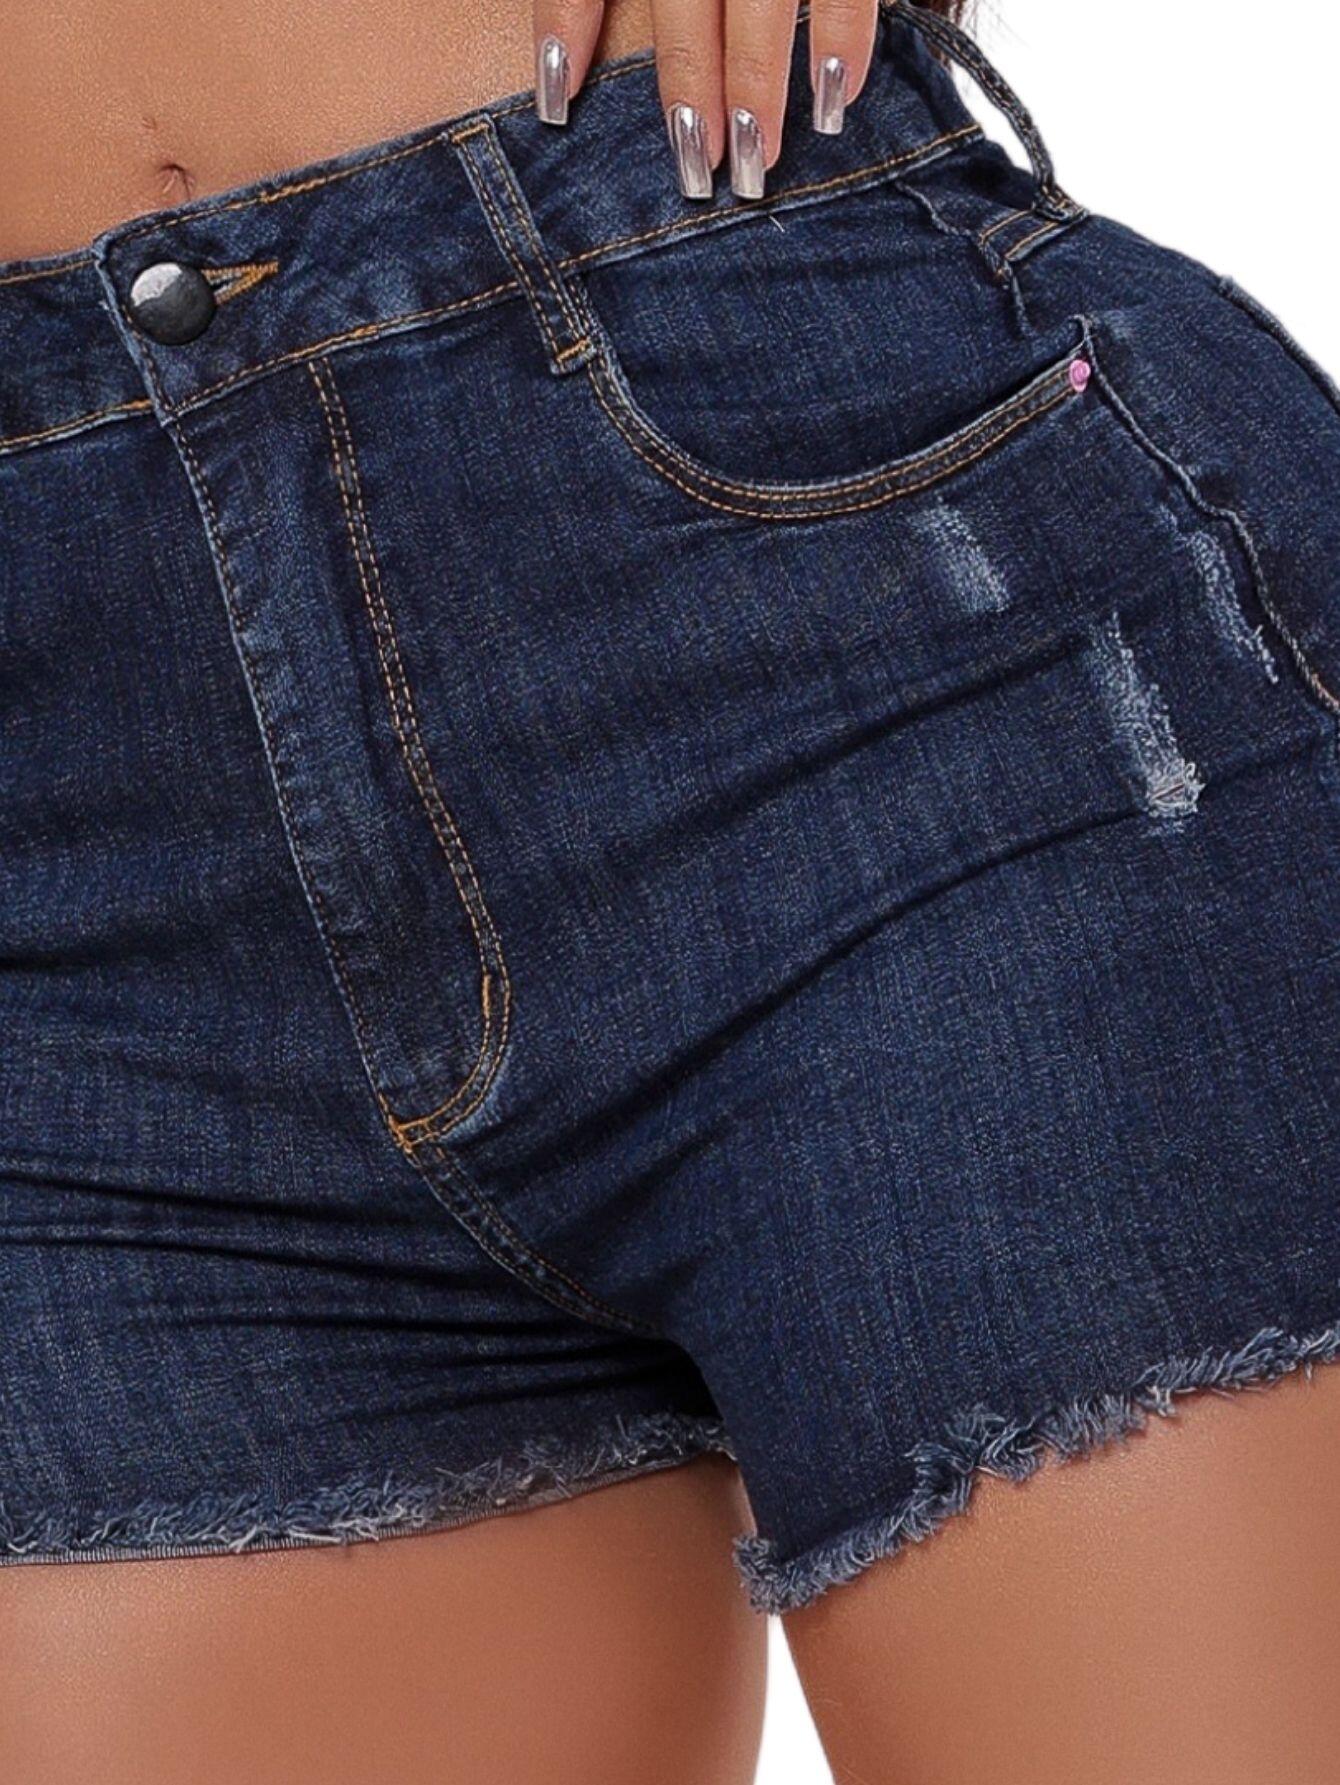 Short Feminino Jeans Azul Marinho Comfort - Compre Agora Online